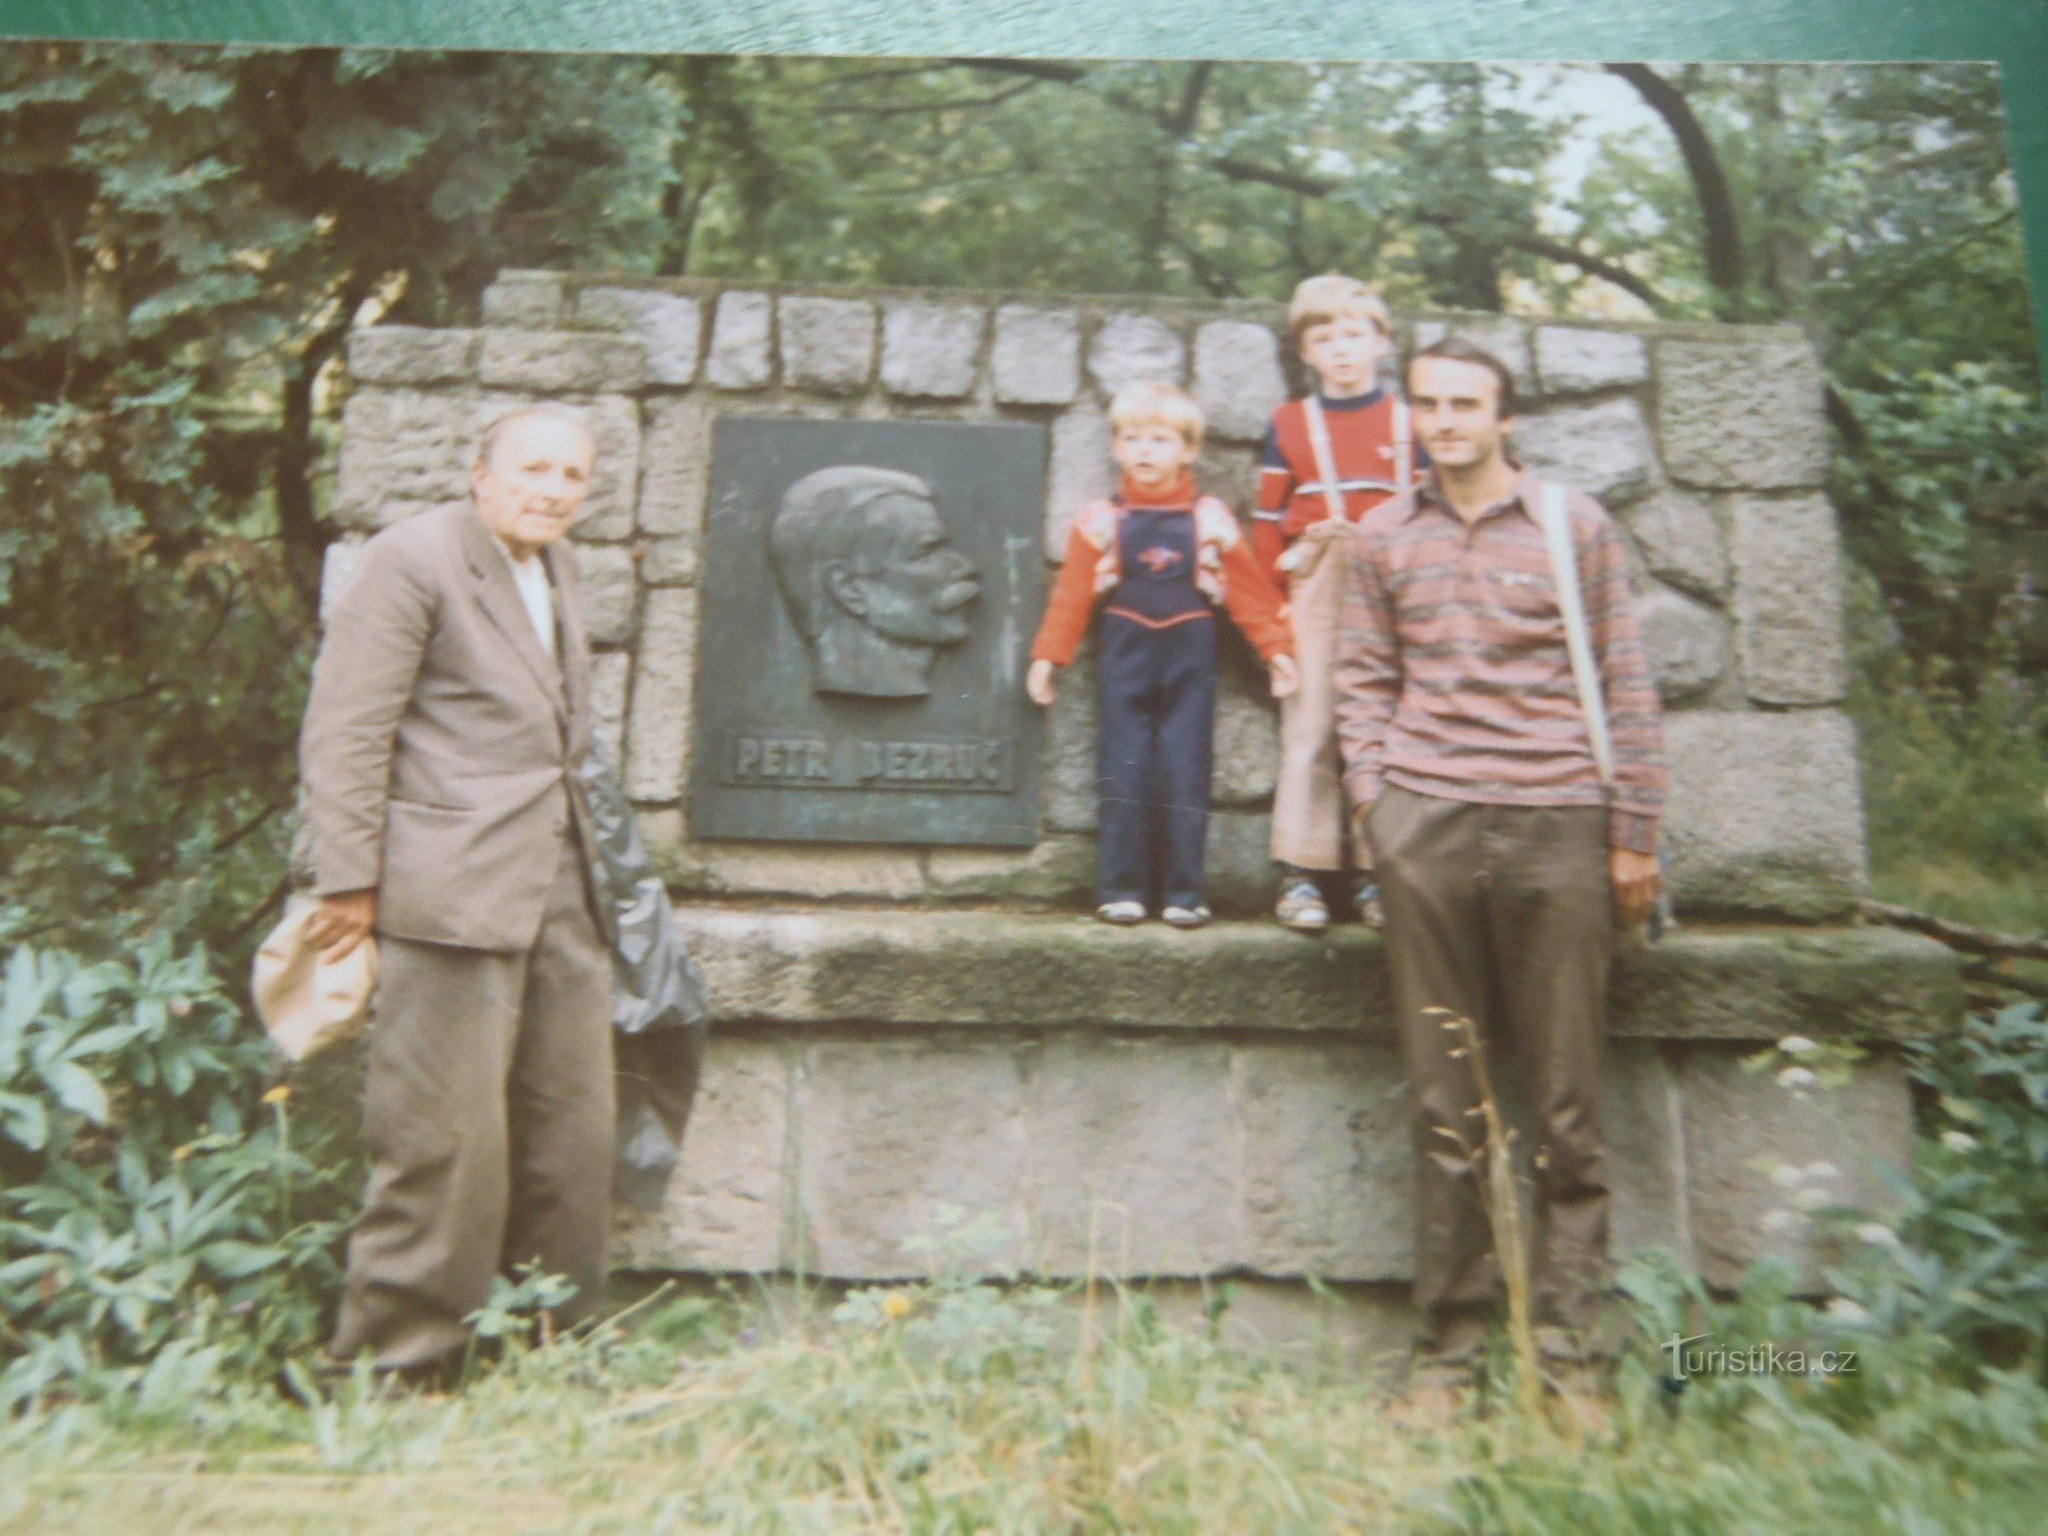 Cùng một nơi, năm 1987. Bố tôi Otakar Vašek, cháu trai Petr Bezruč và cháu trai Anto